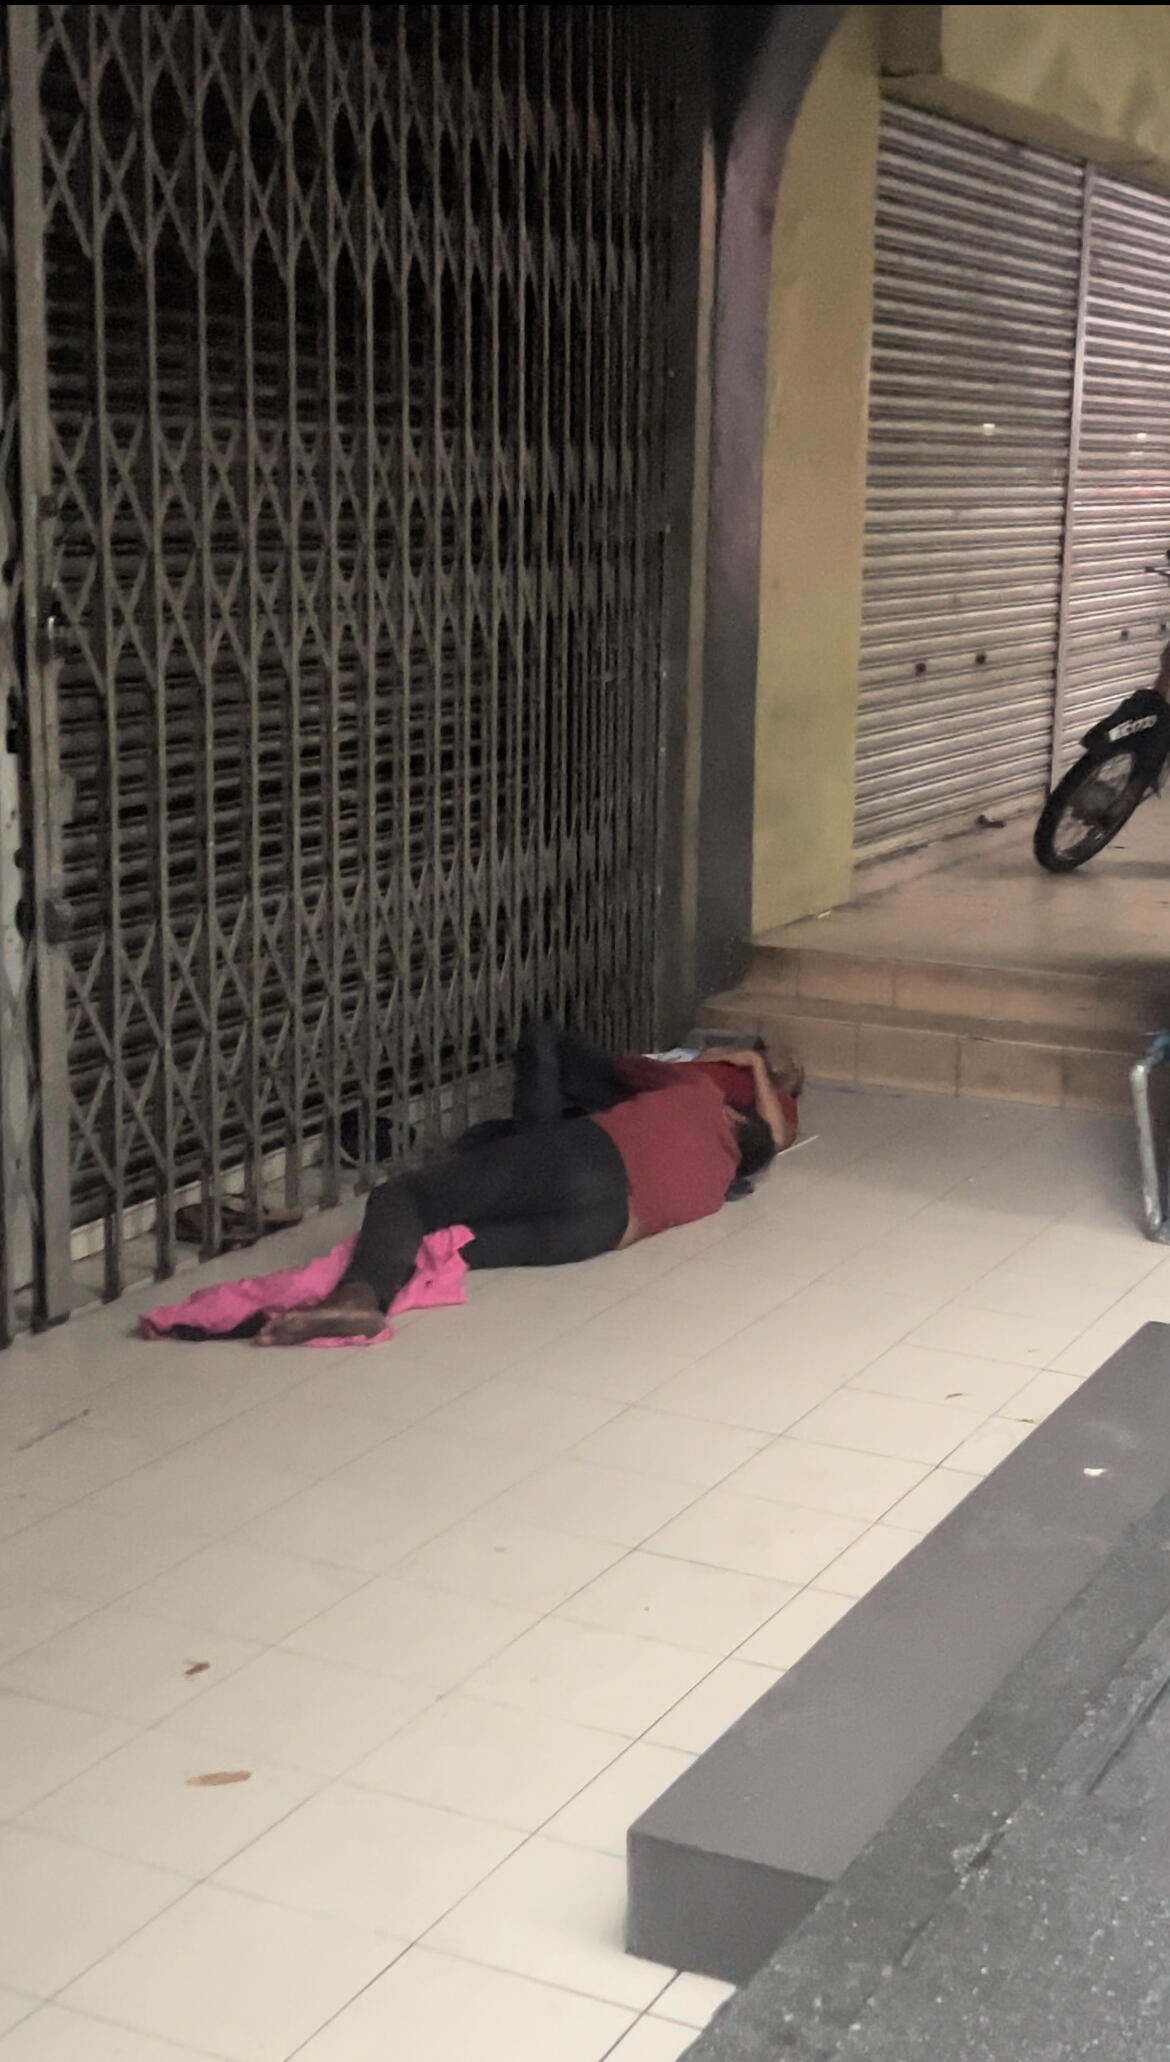 Beggar sleeping beside the street